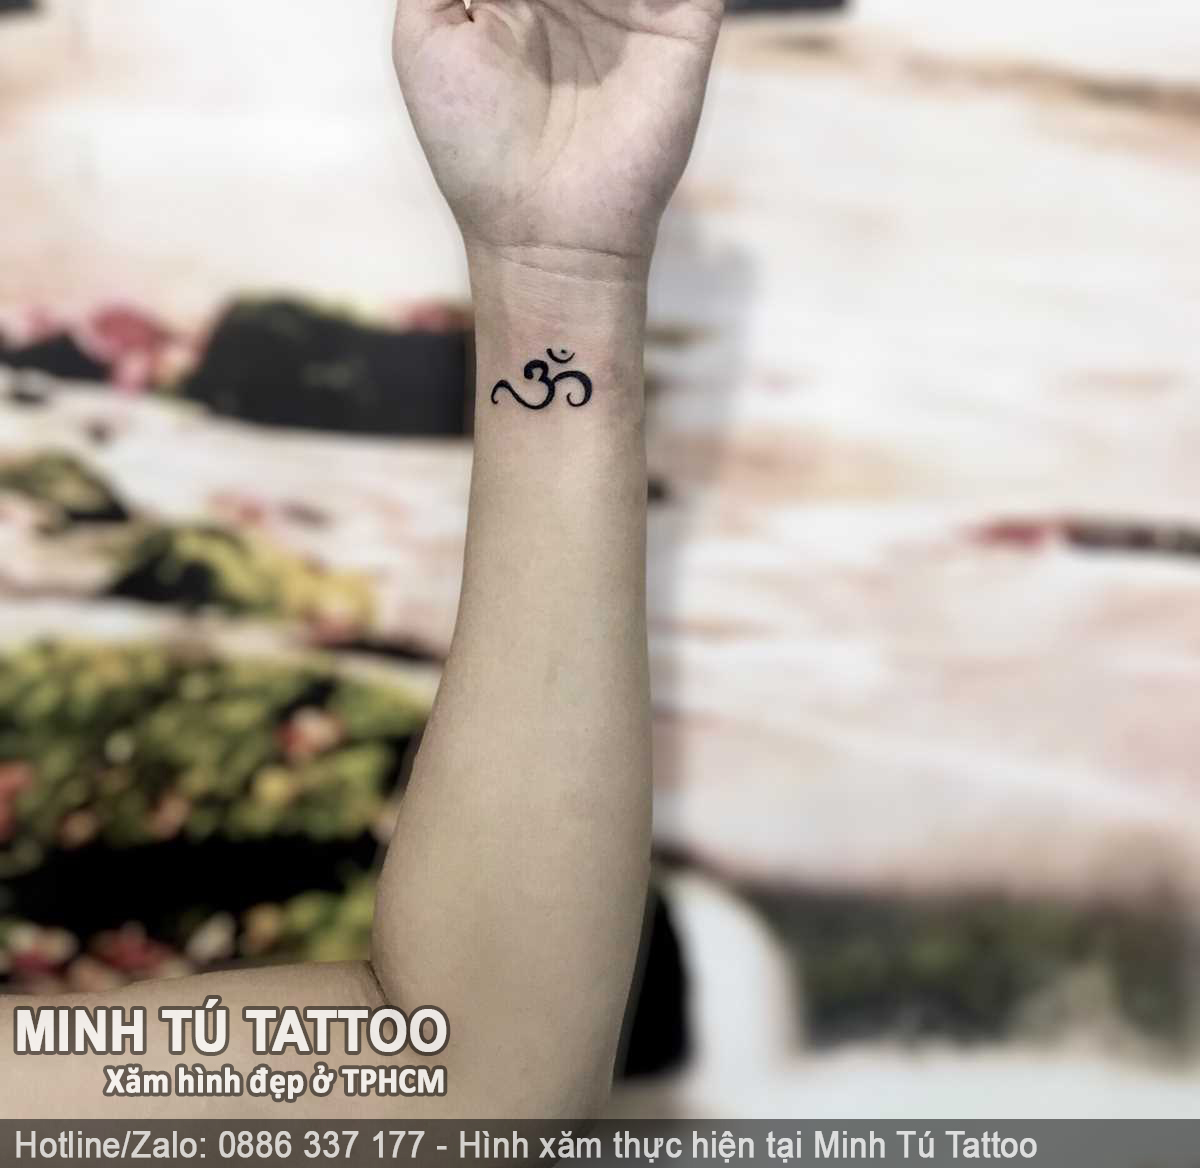 Tác phẩm hình xăm do Minh Tú Tattoo thực hiện 156